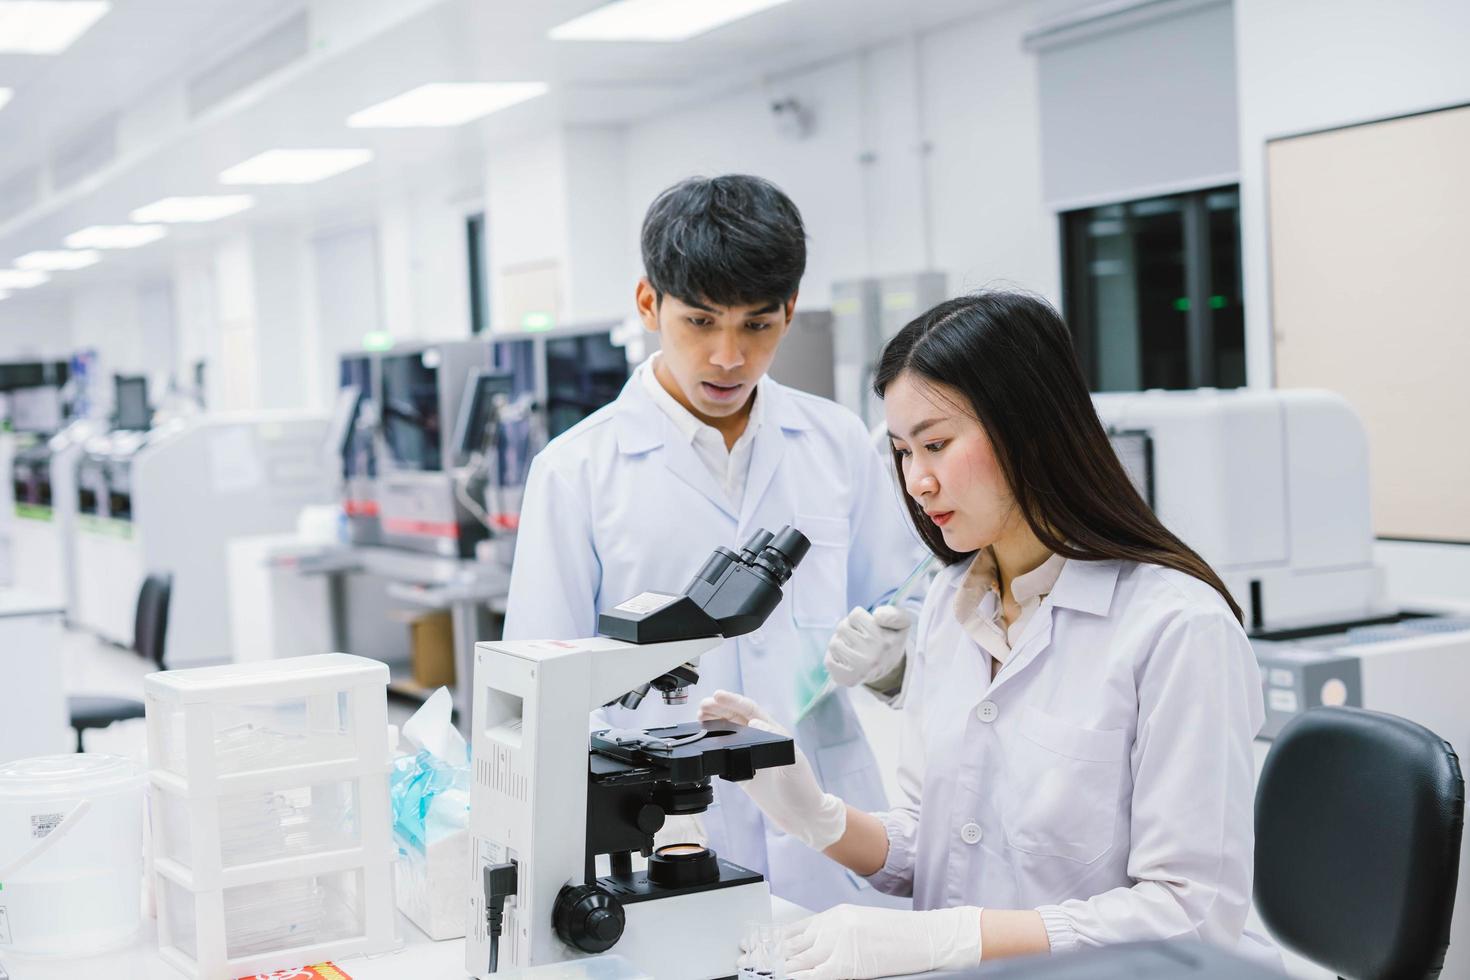 två medicinska forskare som arbetar i medicinskt laboratorium, ung kvinnlig forskare tittar på mikroskop. välj fokus hos ung kvinnlig forskare foto